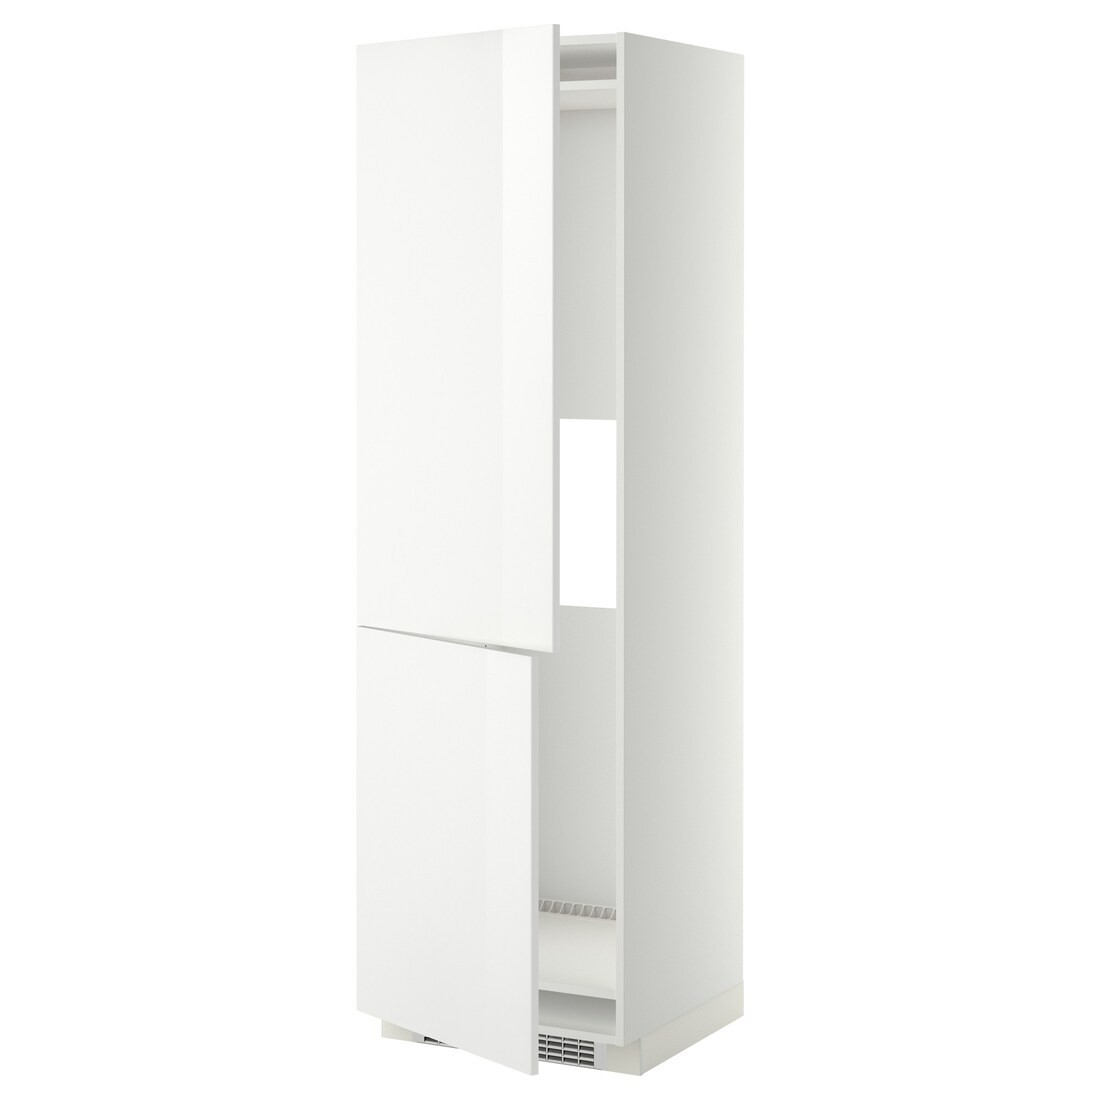 METOD МЕТОД Высокий шкаф для холодильника / морозильника, белый / Ringhult белый, 60x60x200 см